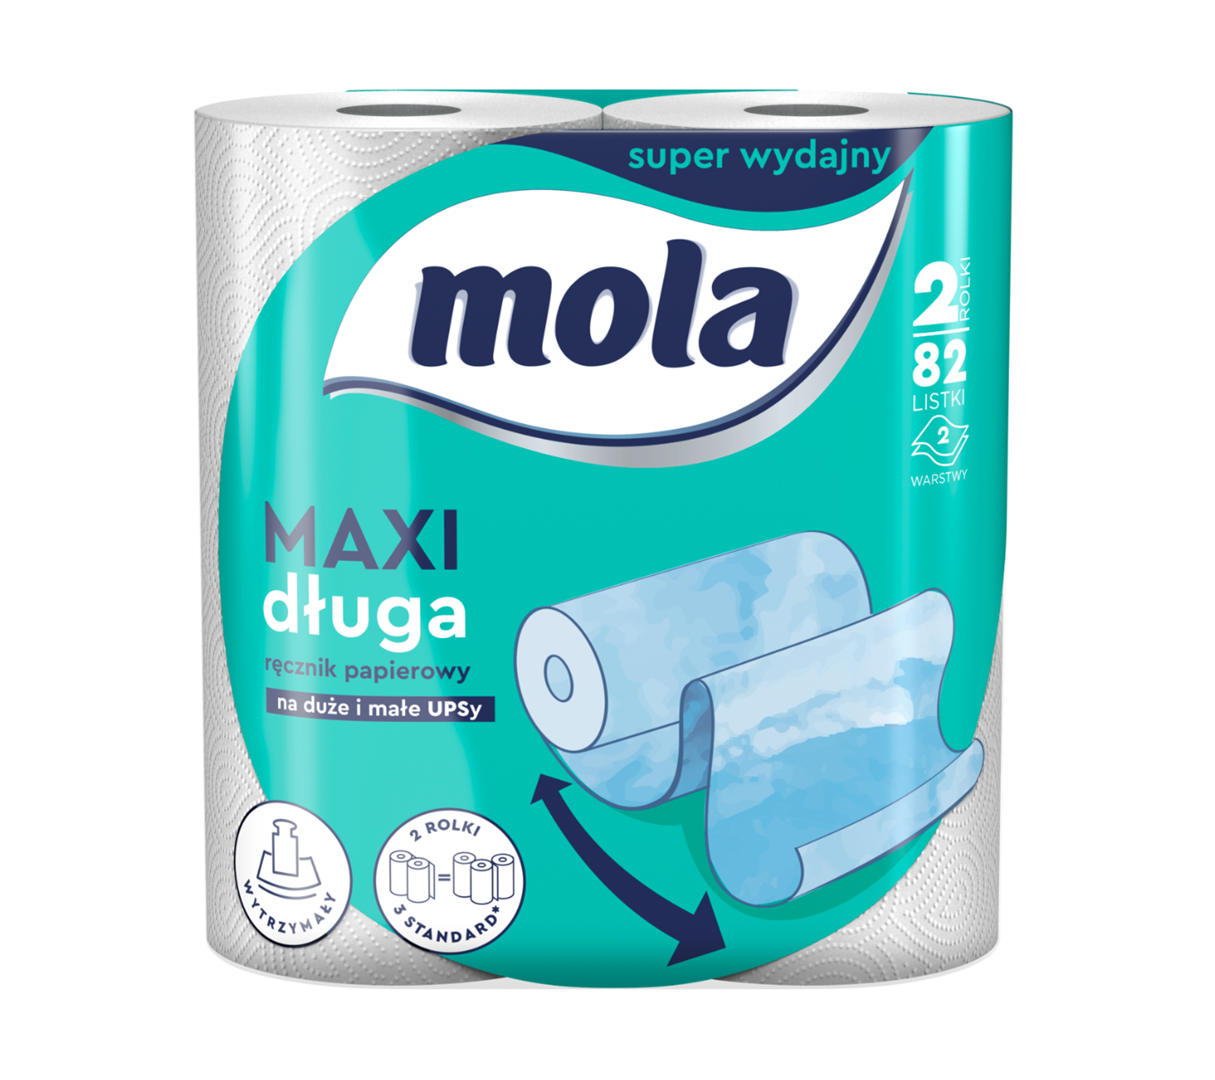 Ręcznik papierowy Mola Maxi Długa op.2 rolki, 2 wartwy, 82 listki